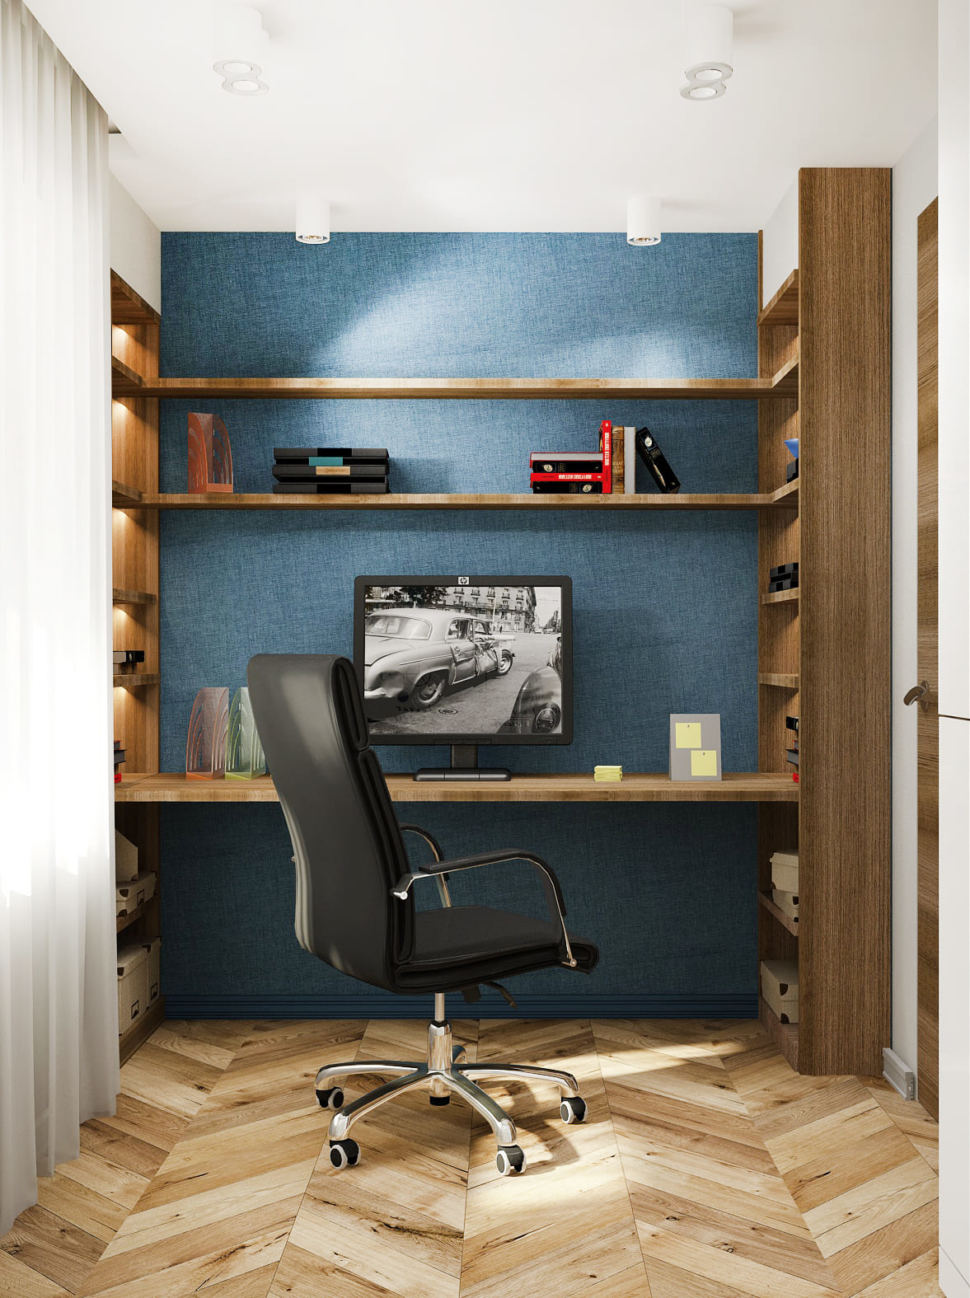 Дизайн проект кабинета в теплых тонах 14 кв.м, черный офисный стул, рабочий стол, стеллаж, обои